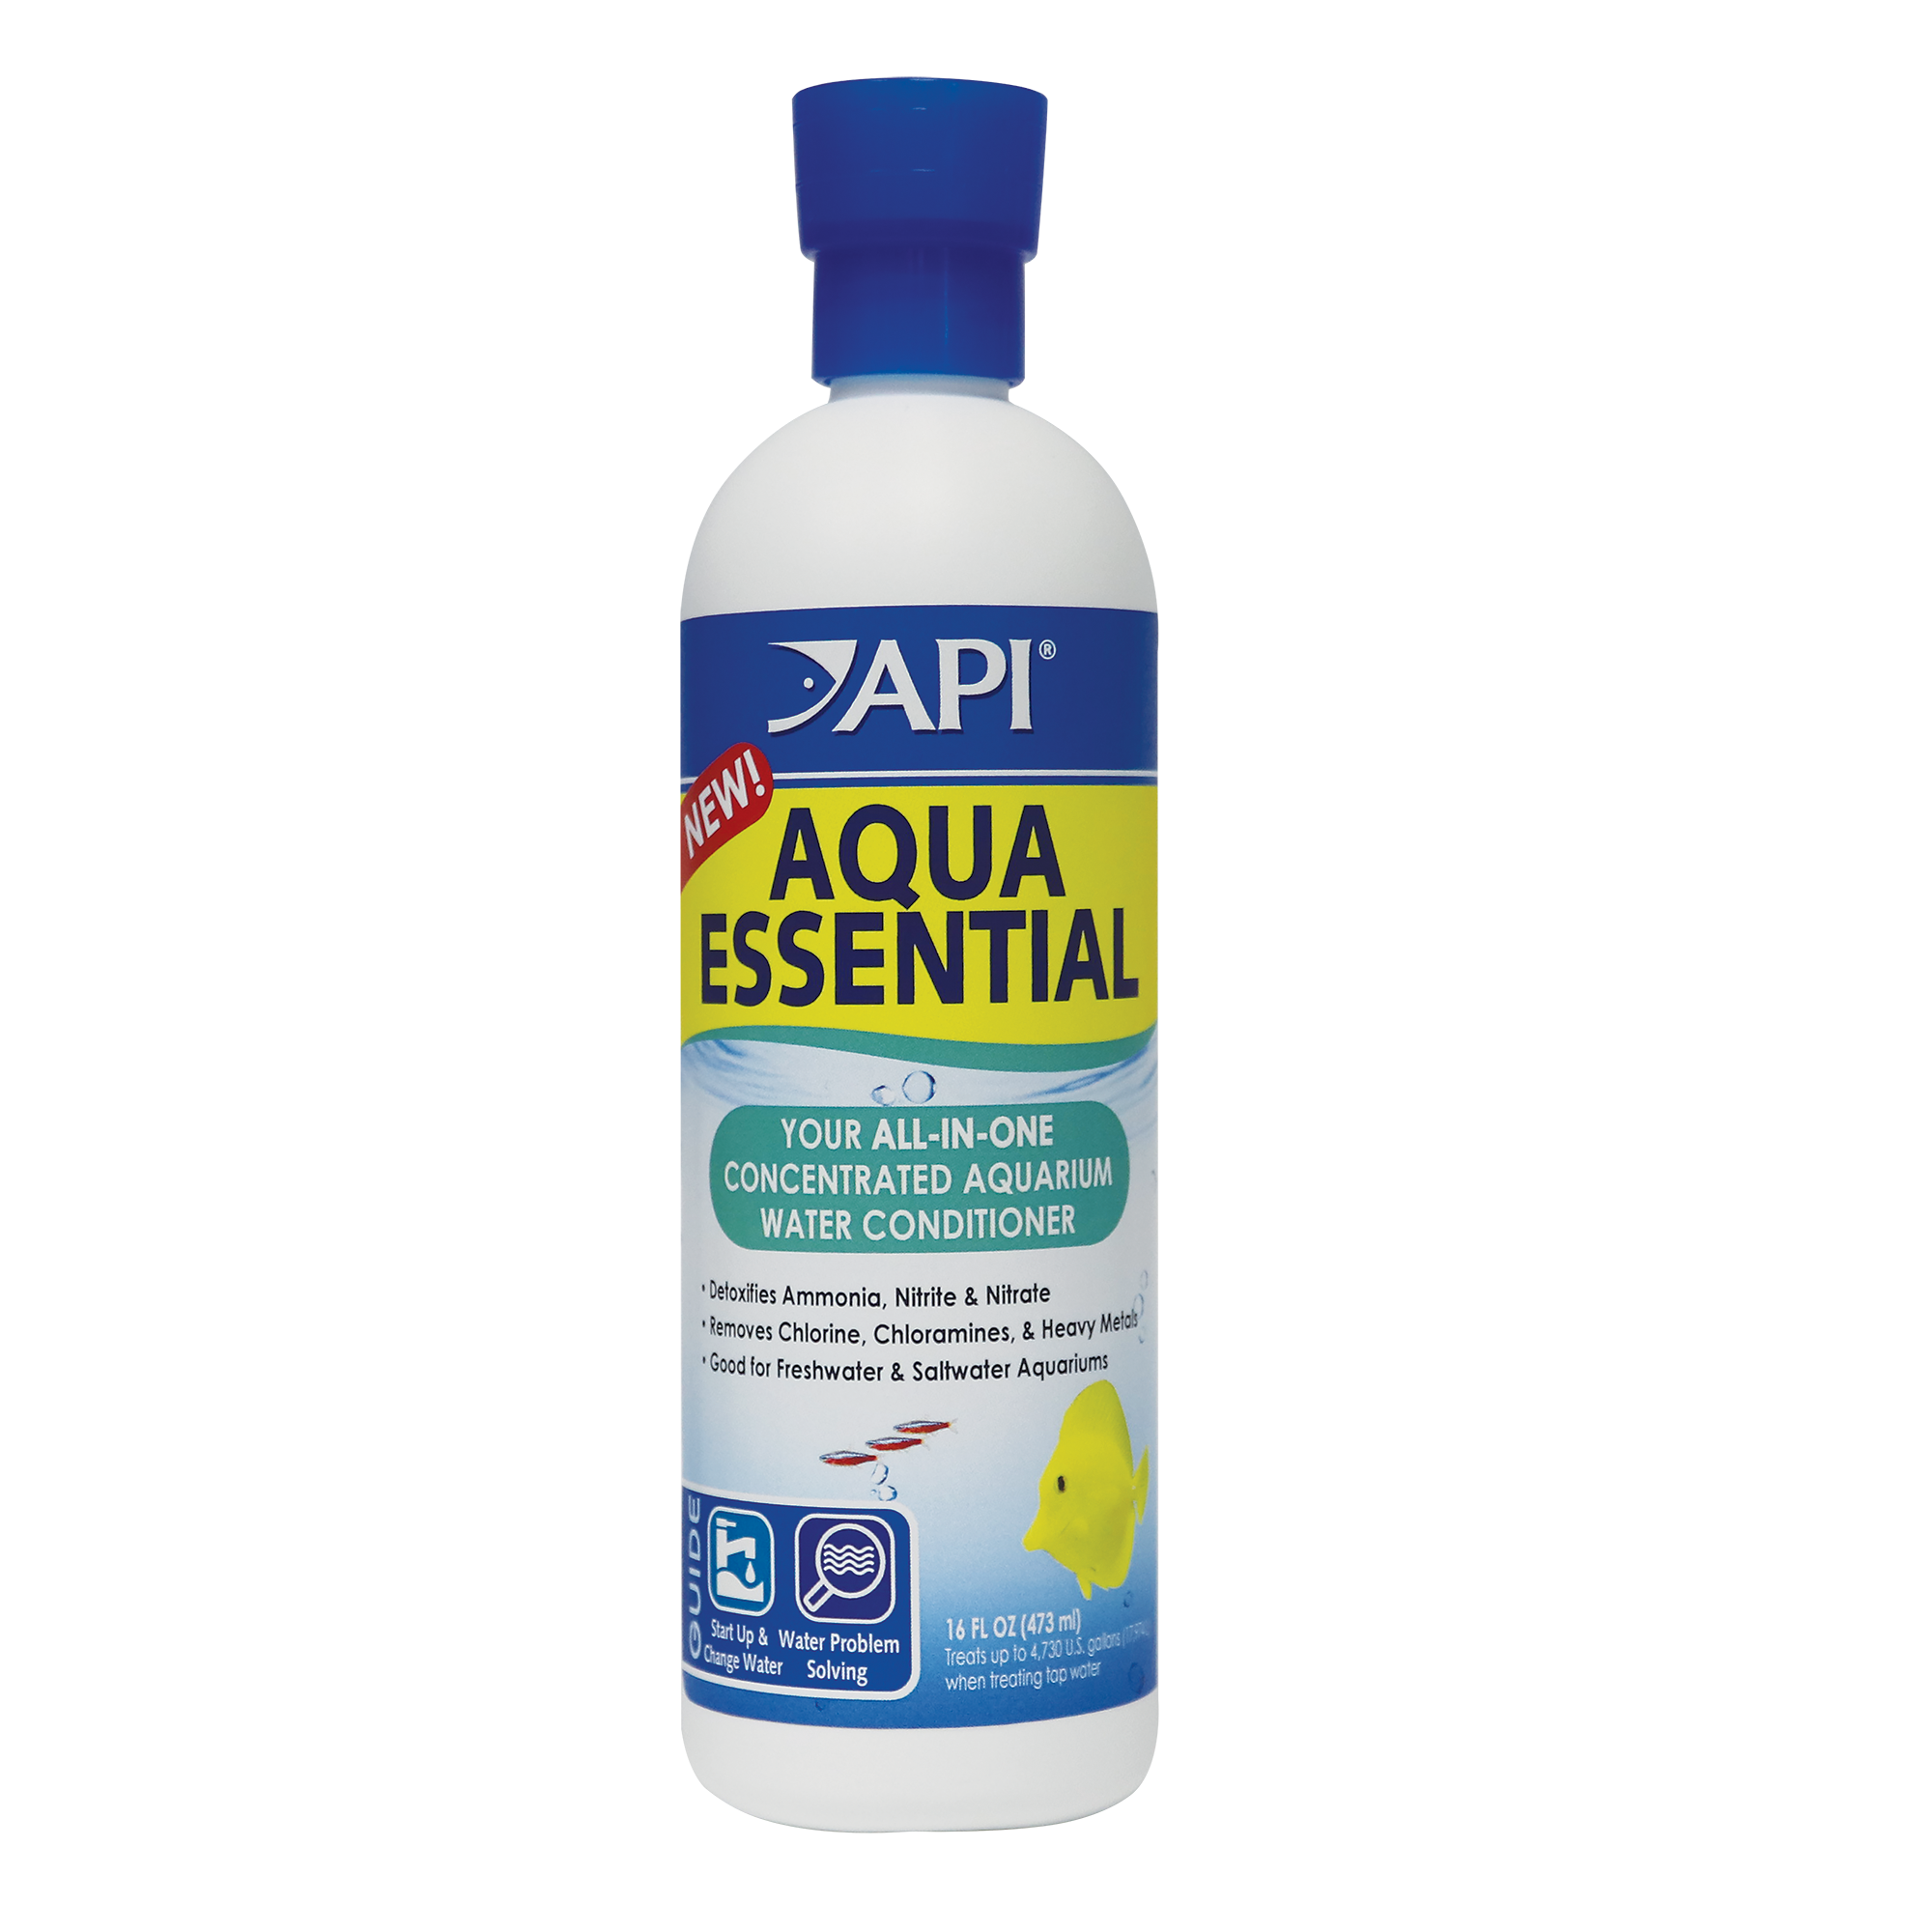 Api Aqua Essential 237ml